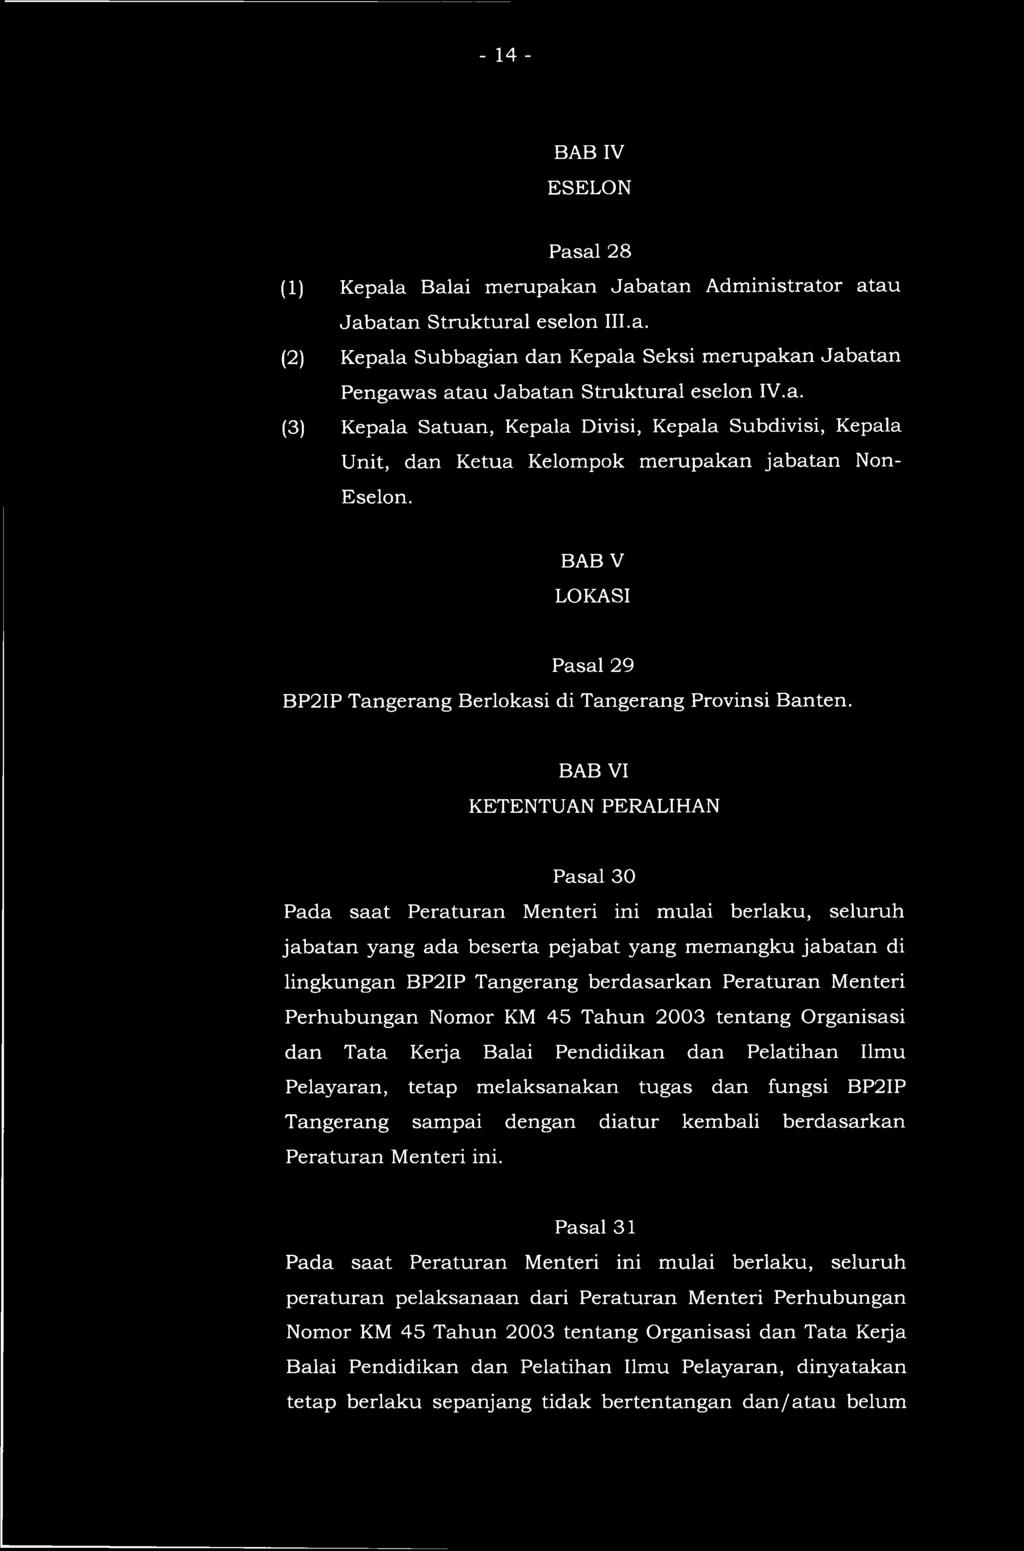 BAB VI KETENTUAN PERALIHAN Pasal 30 Pada saat Peraturan Menteri ini mulai berlaku, seluruh jabatan yang ada beserta pejabat yang memangku jabatan di lingkungan BP2IP Tangerang berdasarkan Peraturan